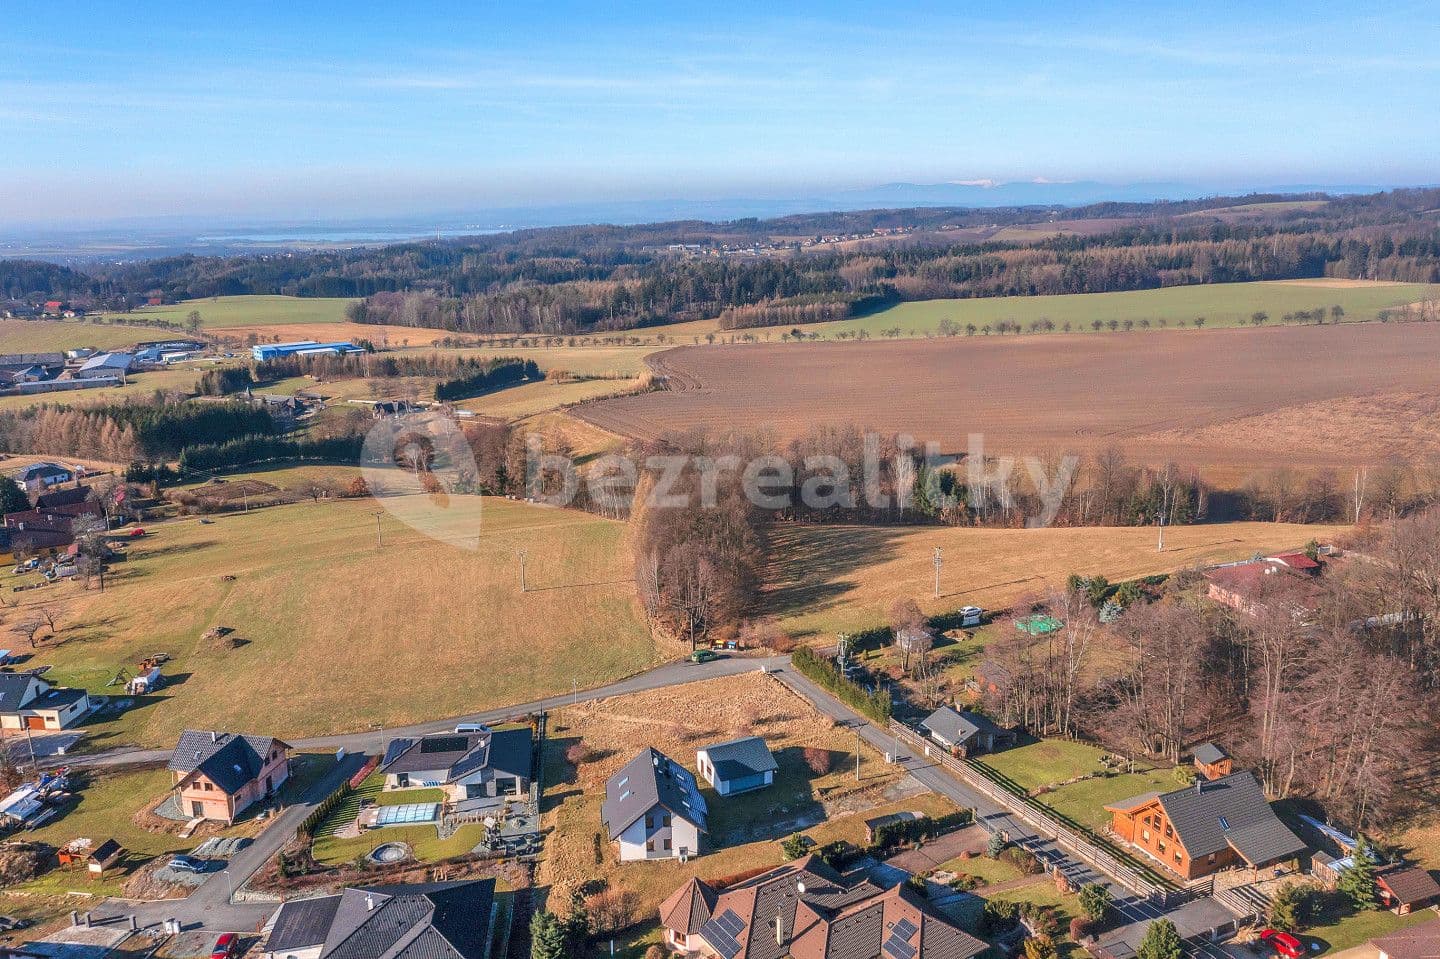 Predaj pozemku 1.076 m², Slavoňov, Královéhradecký kraj